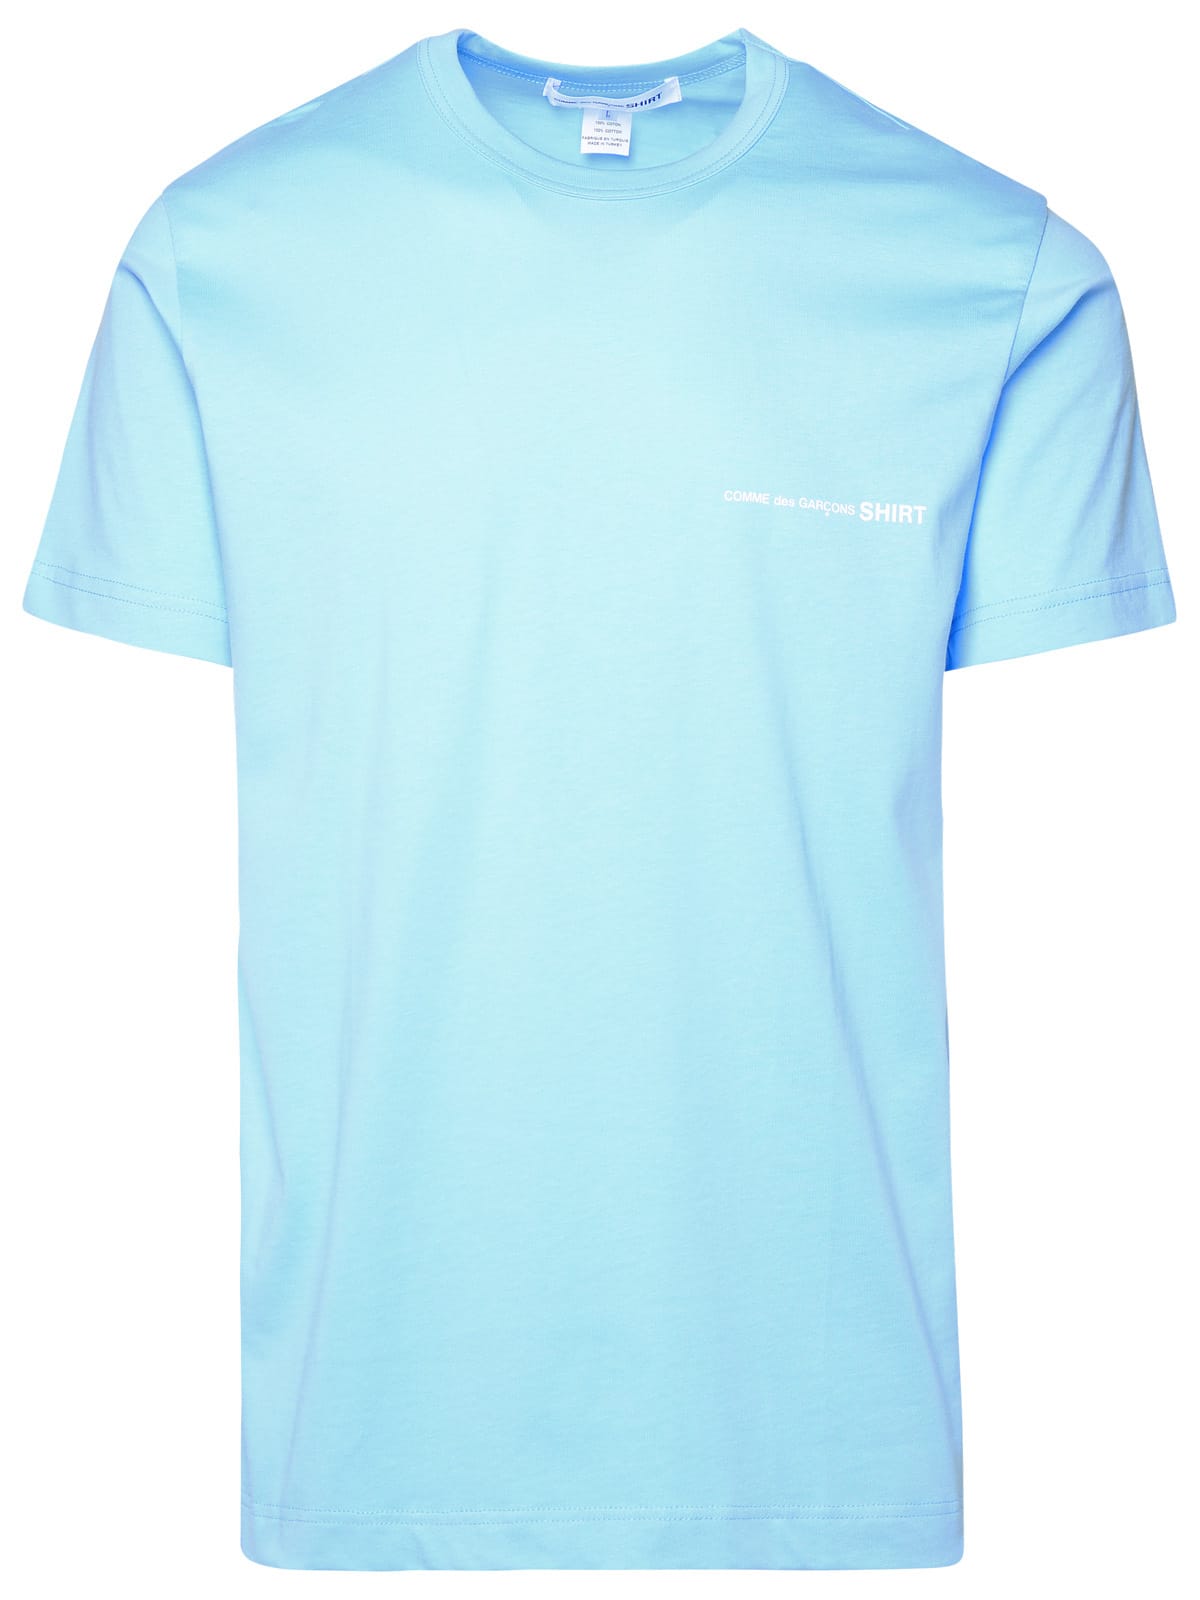 Light Blue Cotton T-shirt